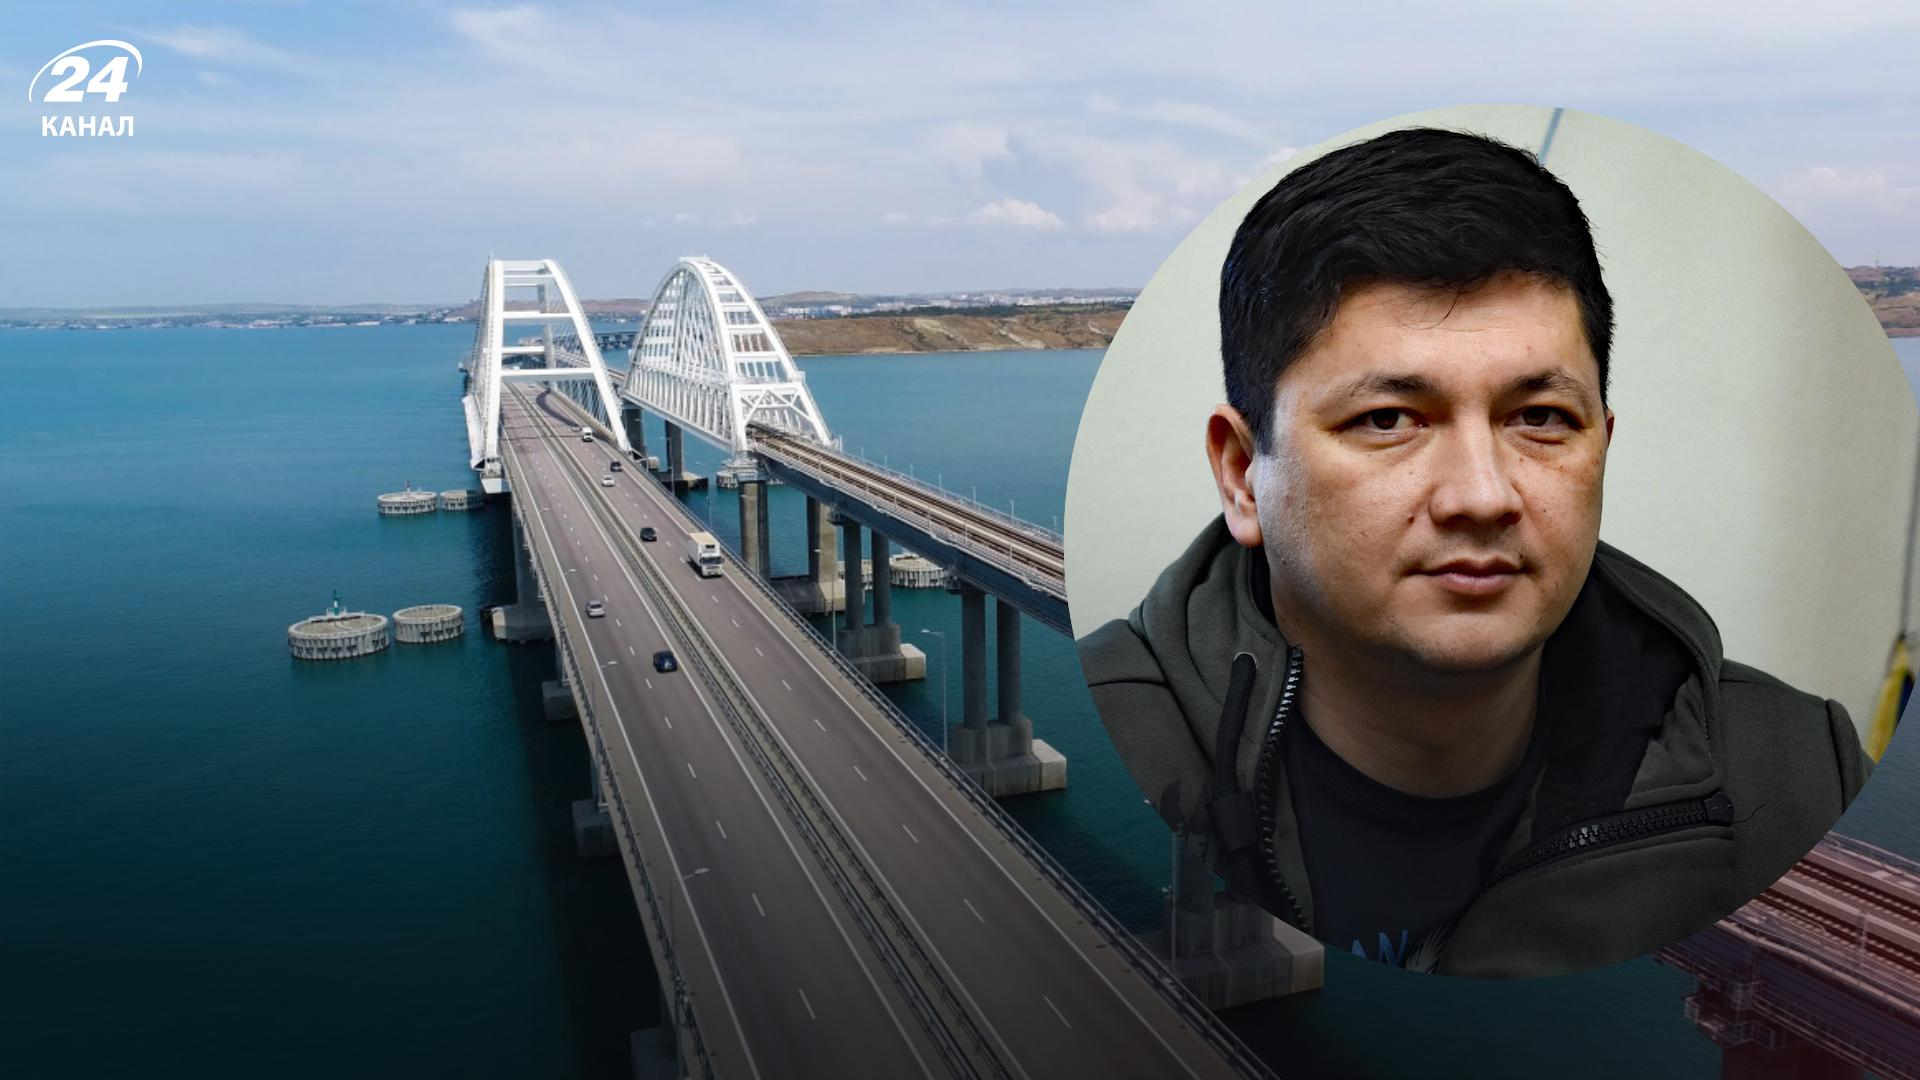 Удар по Крымскому мосту - Ким обратился к россиянам, чтобы не прикрывались гражданскими